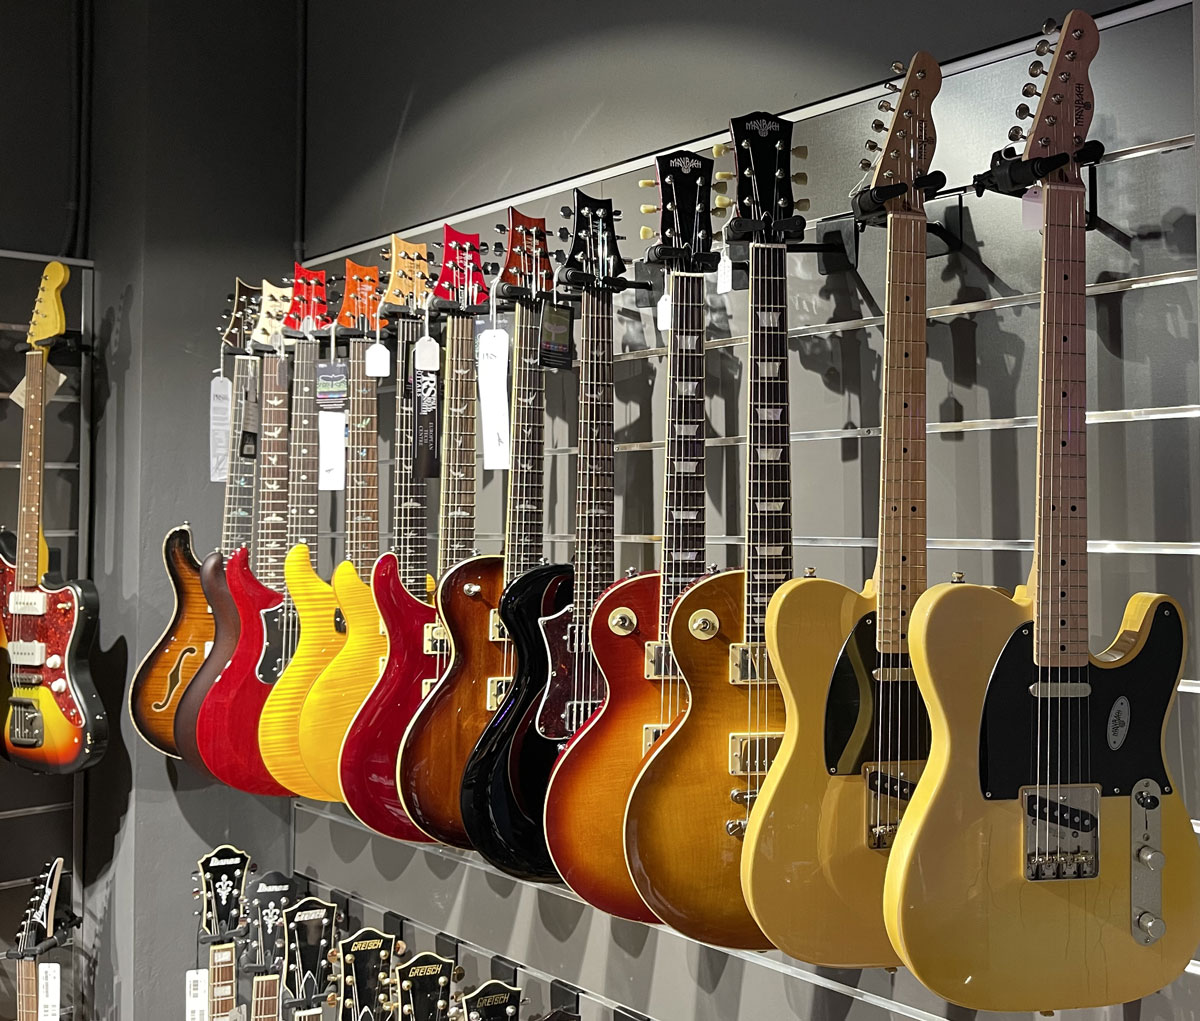 Las guitarras Maybach son poco menos que objetos de deseo gracias, entre otros, a su exquisito diseño, componentes de primera calidad ensamblados a mano y un sonido articulado,  rico en matices y con una amplitud dinámica excepcional